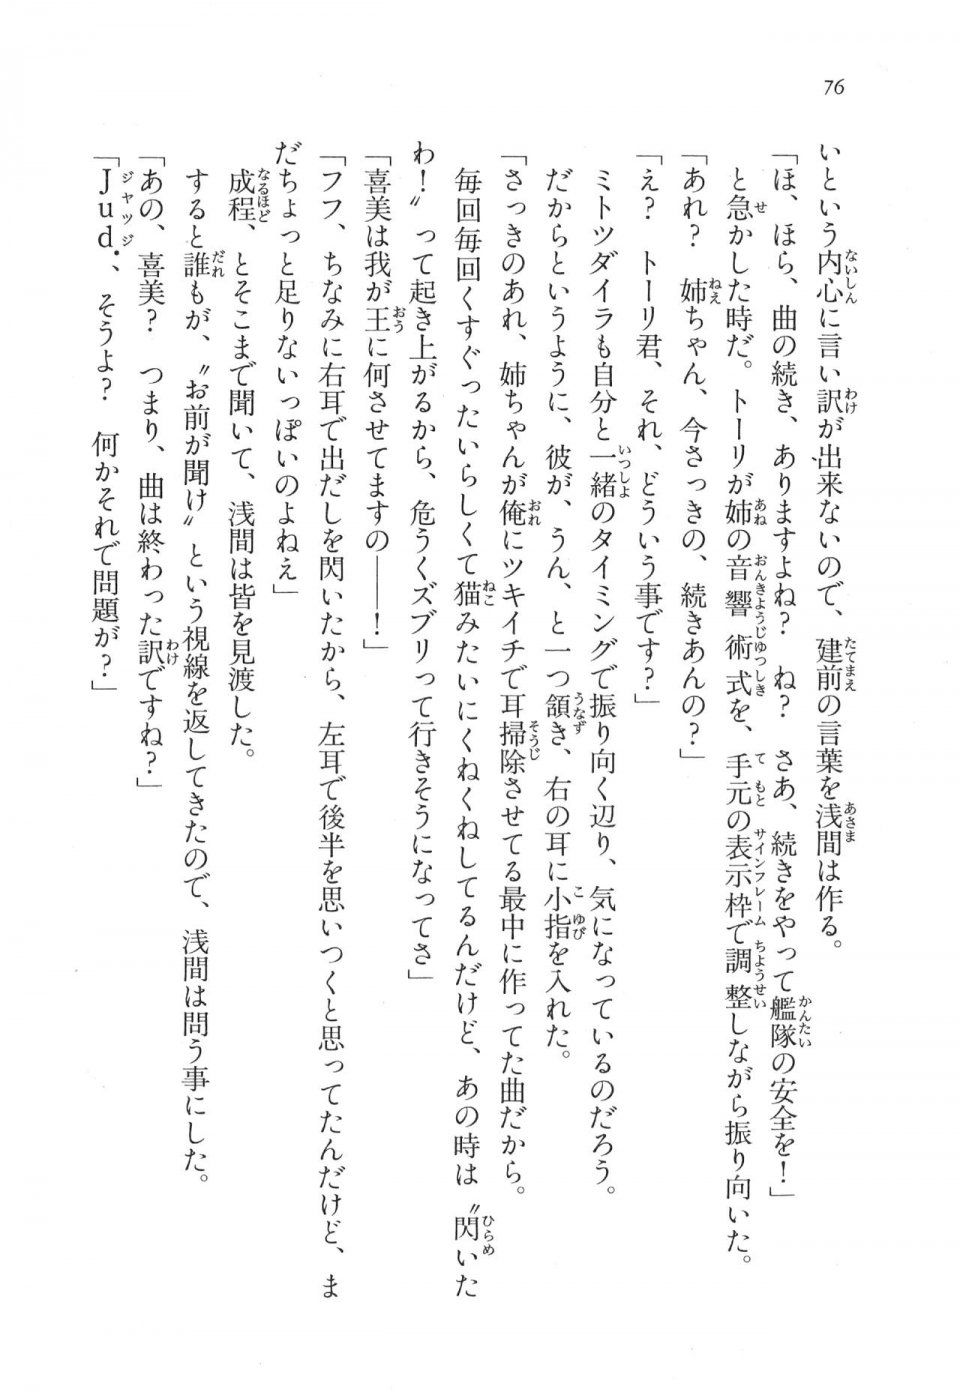 Kyoukai Senjou no Horizon LN Vol 17(7B) - Photo #76